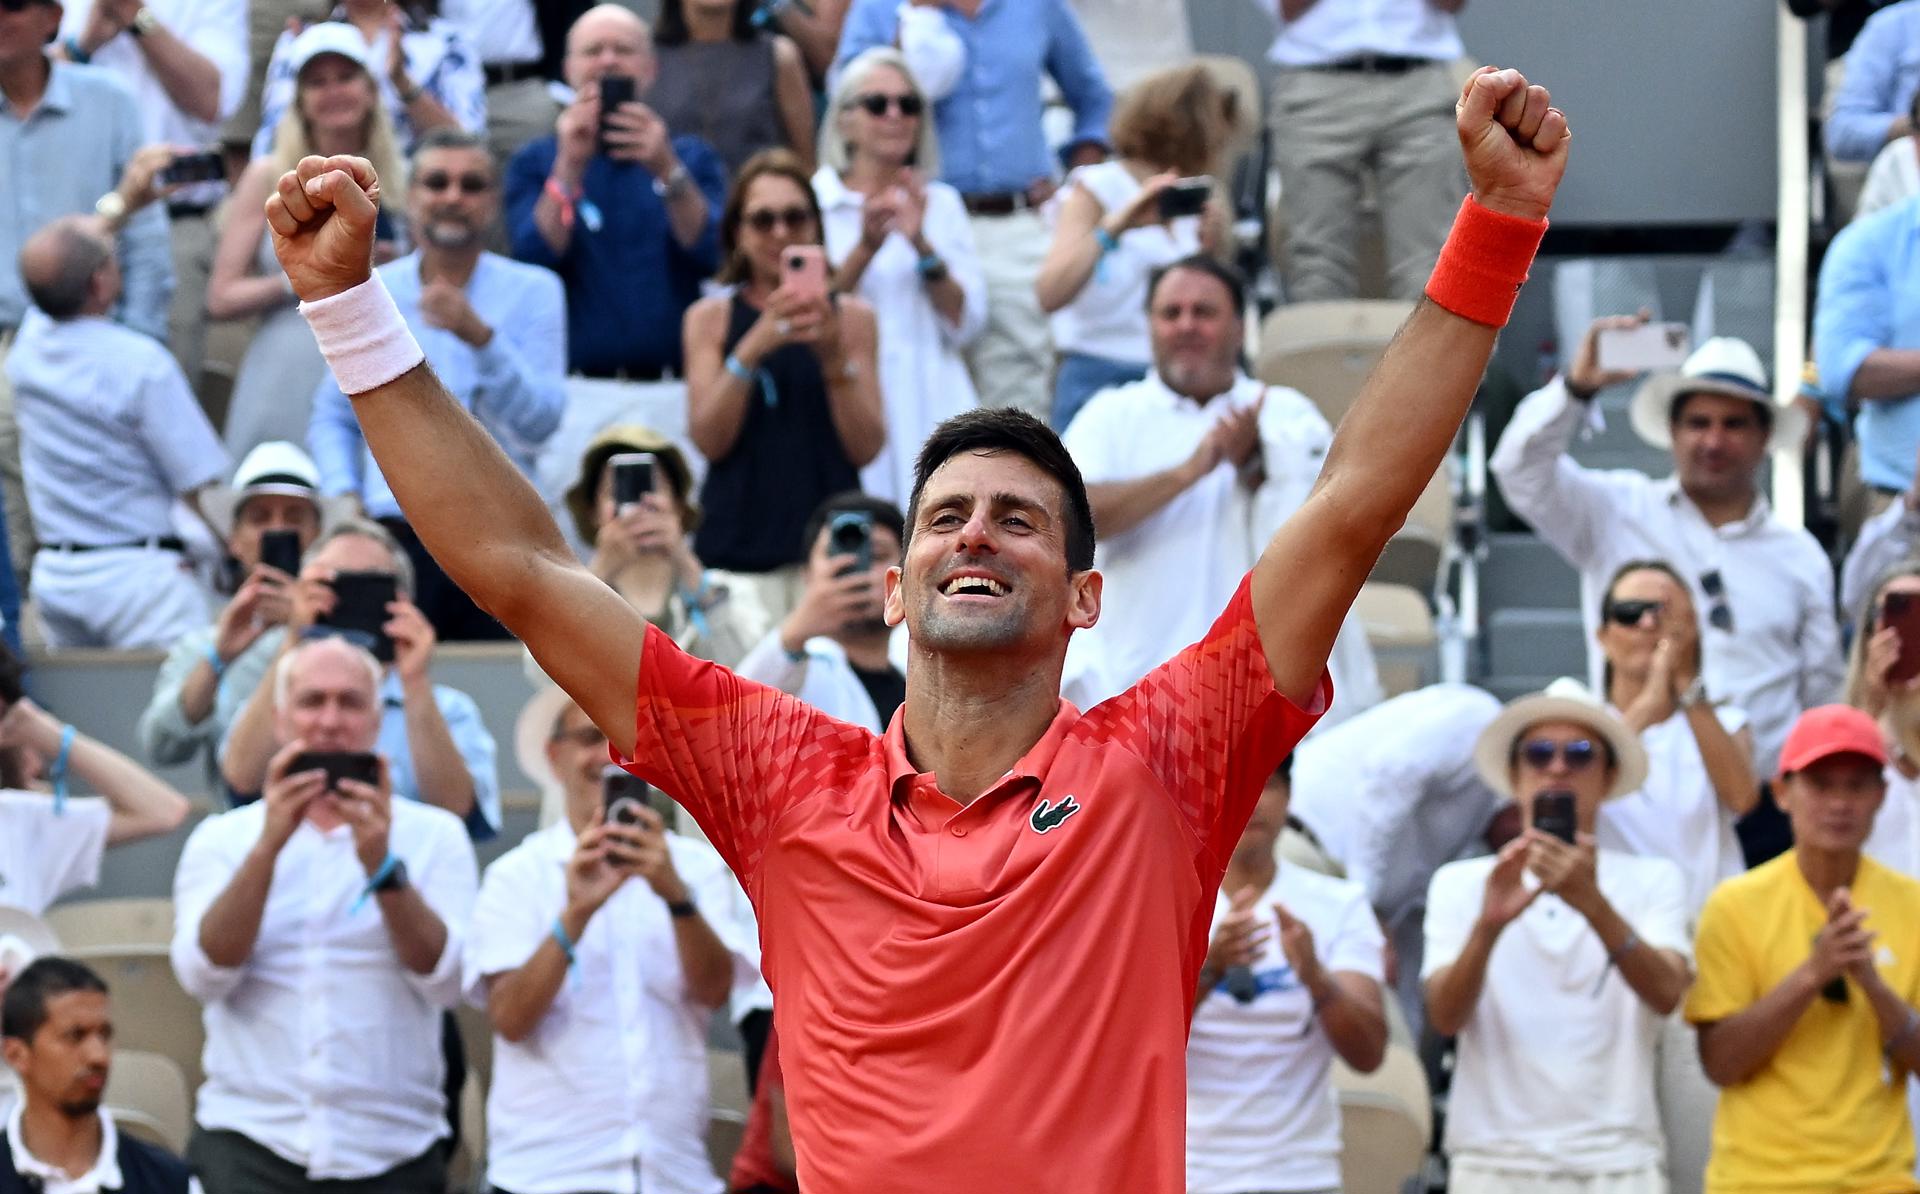 Djokovic vuelve a la cumbre tras ganar en París, Nadal se pierde en el puesto 136